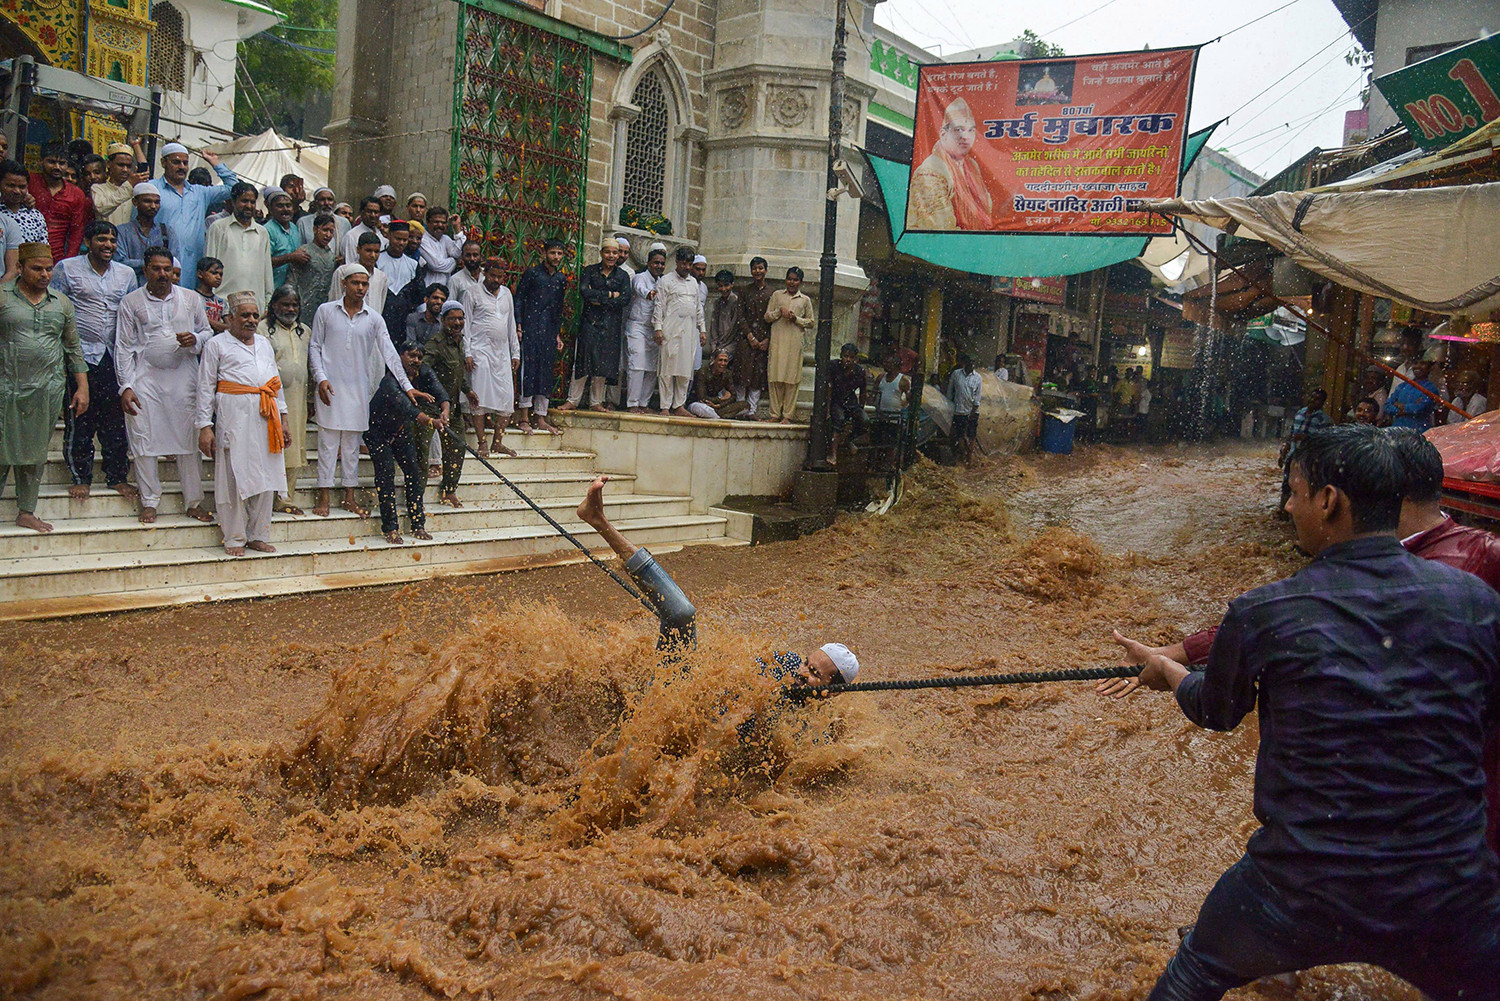 Một người đàn ông đi trong dòng nước lũ ào ạt khi anh ta cố gắng giữ một sợi dây để giúp mọi người băng qua đường sau những cơn mưa gió mùa nặng nề bên ngoài đền thờ Moinuddin Chishti Sufi ở Ajmer, Ấn Độ, vào ngày 1/8.